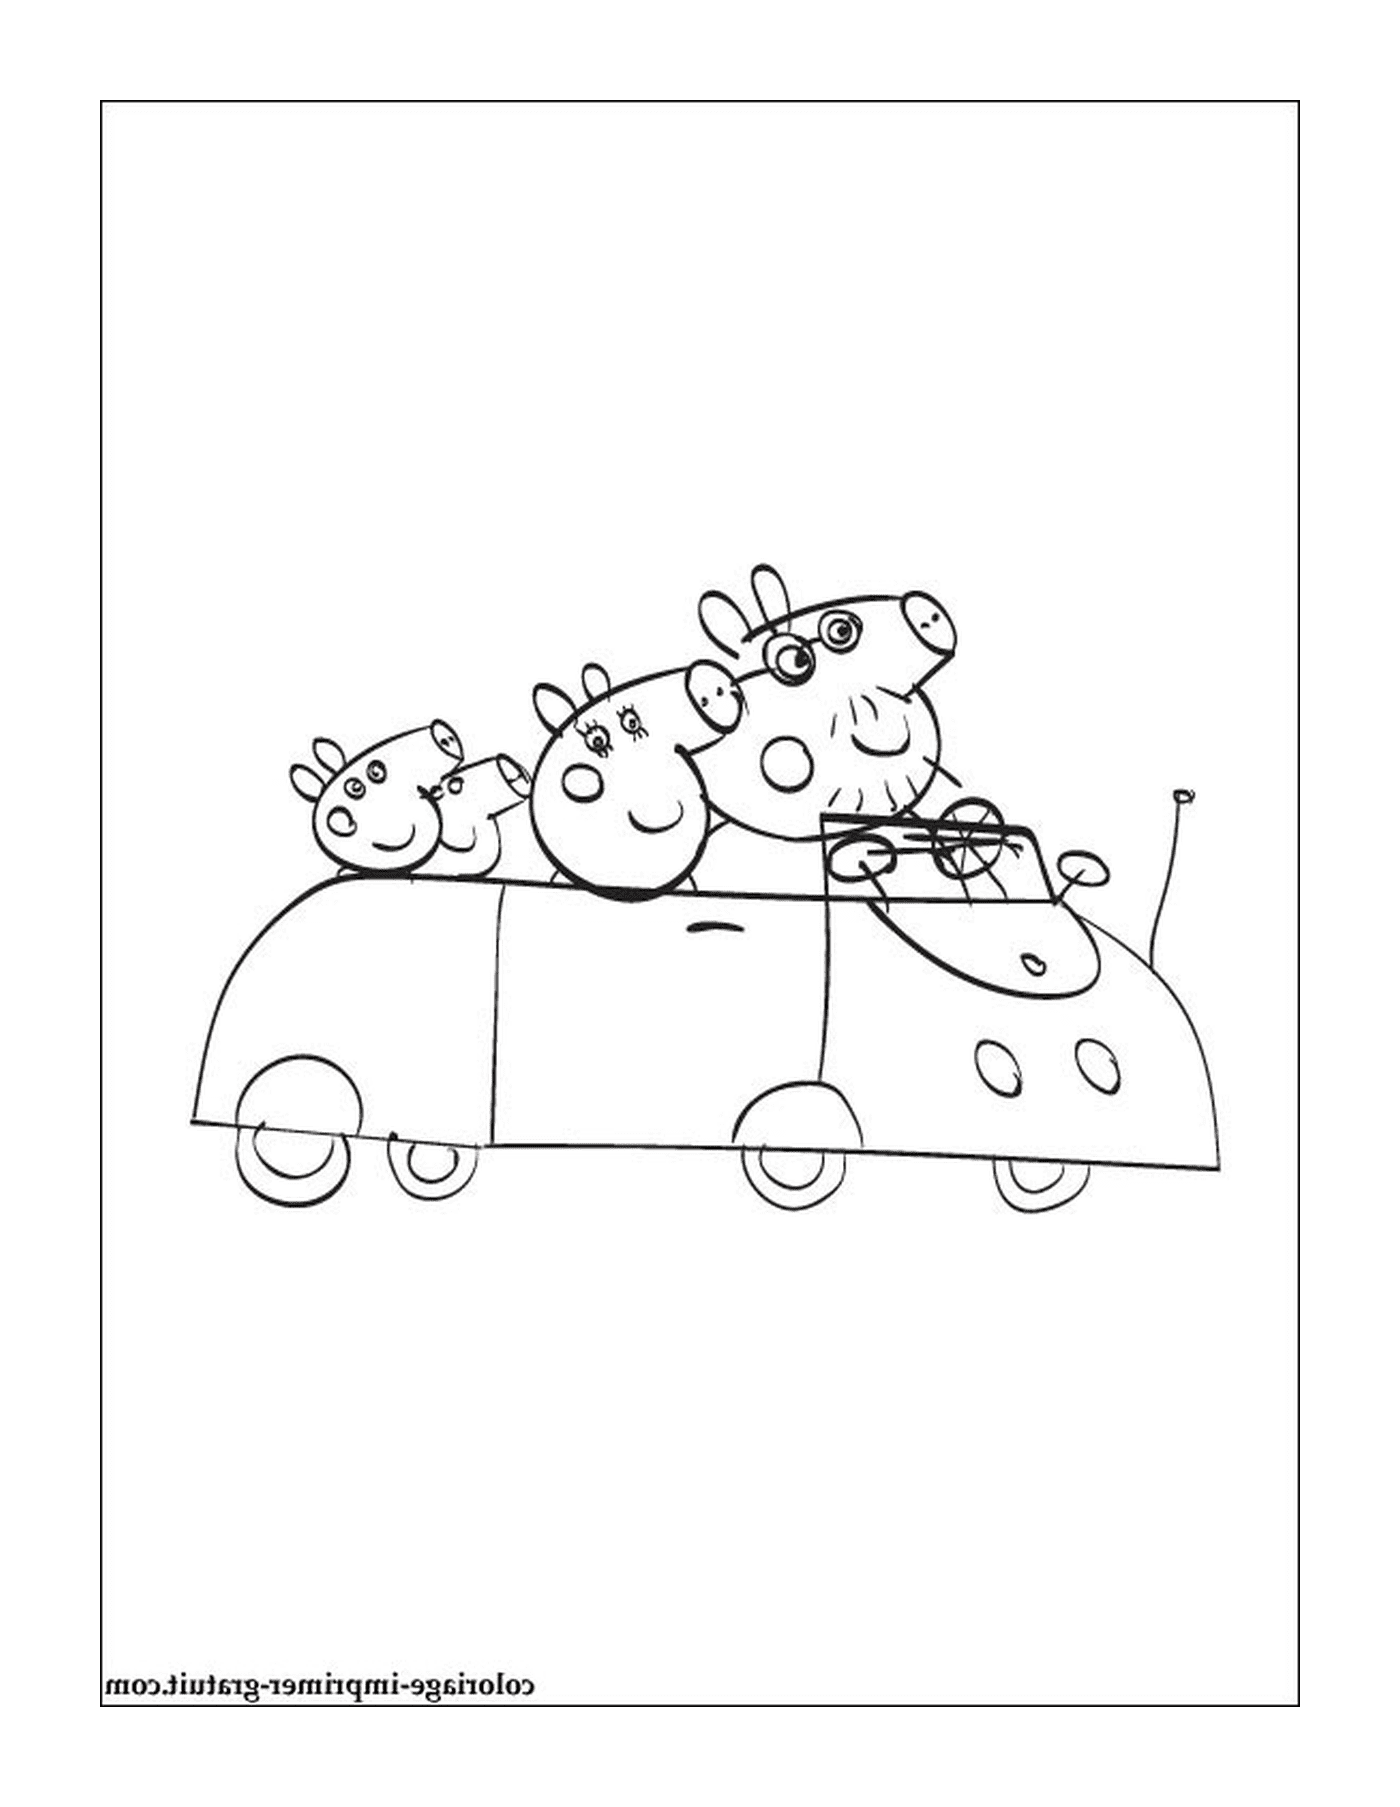  Three cows in a car 